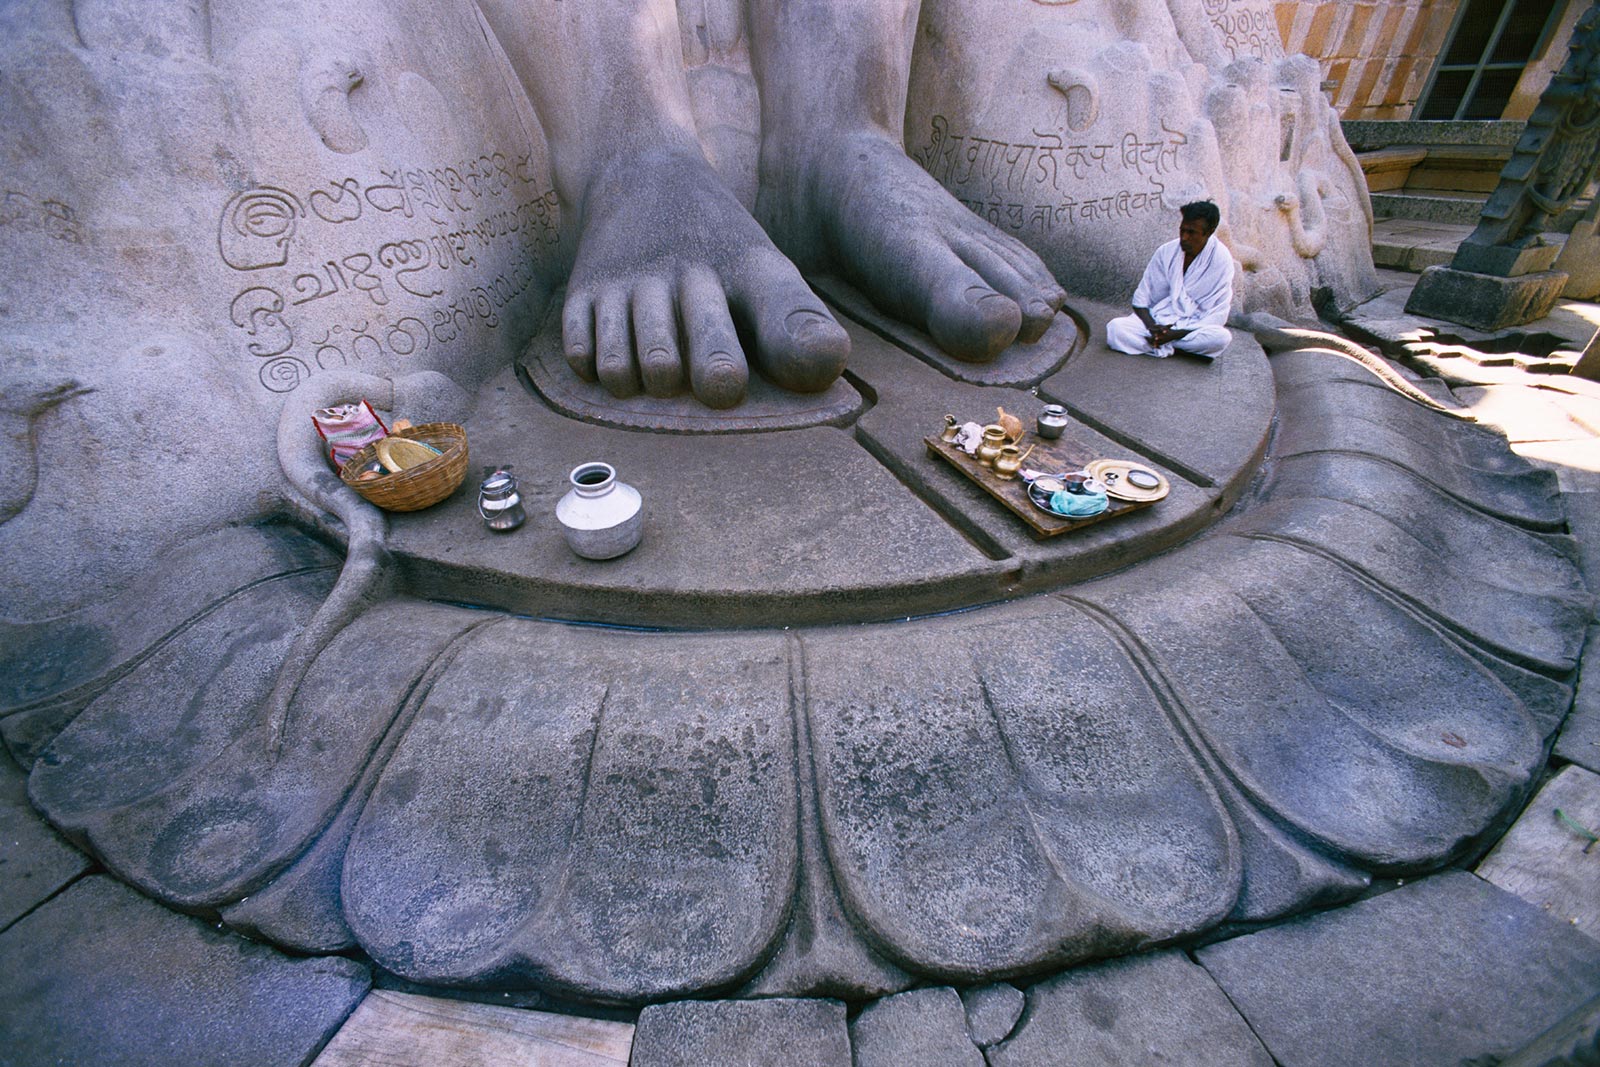 De heilige voeten van het standbeeld van Sri Gomatheswar, Shravanabelagola, India